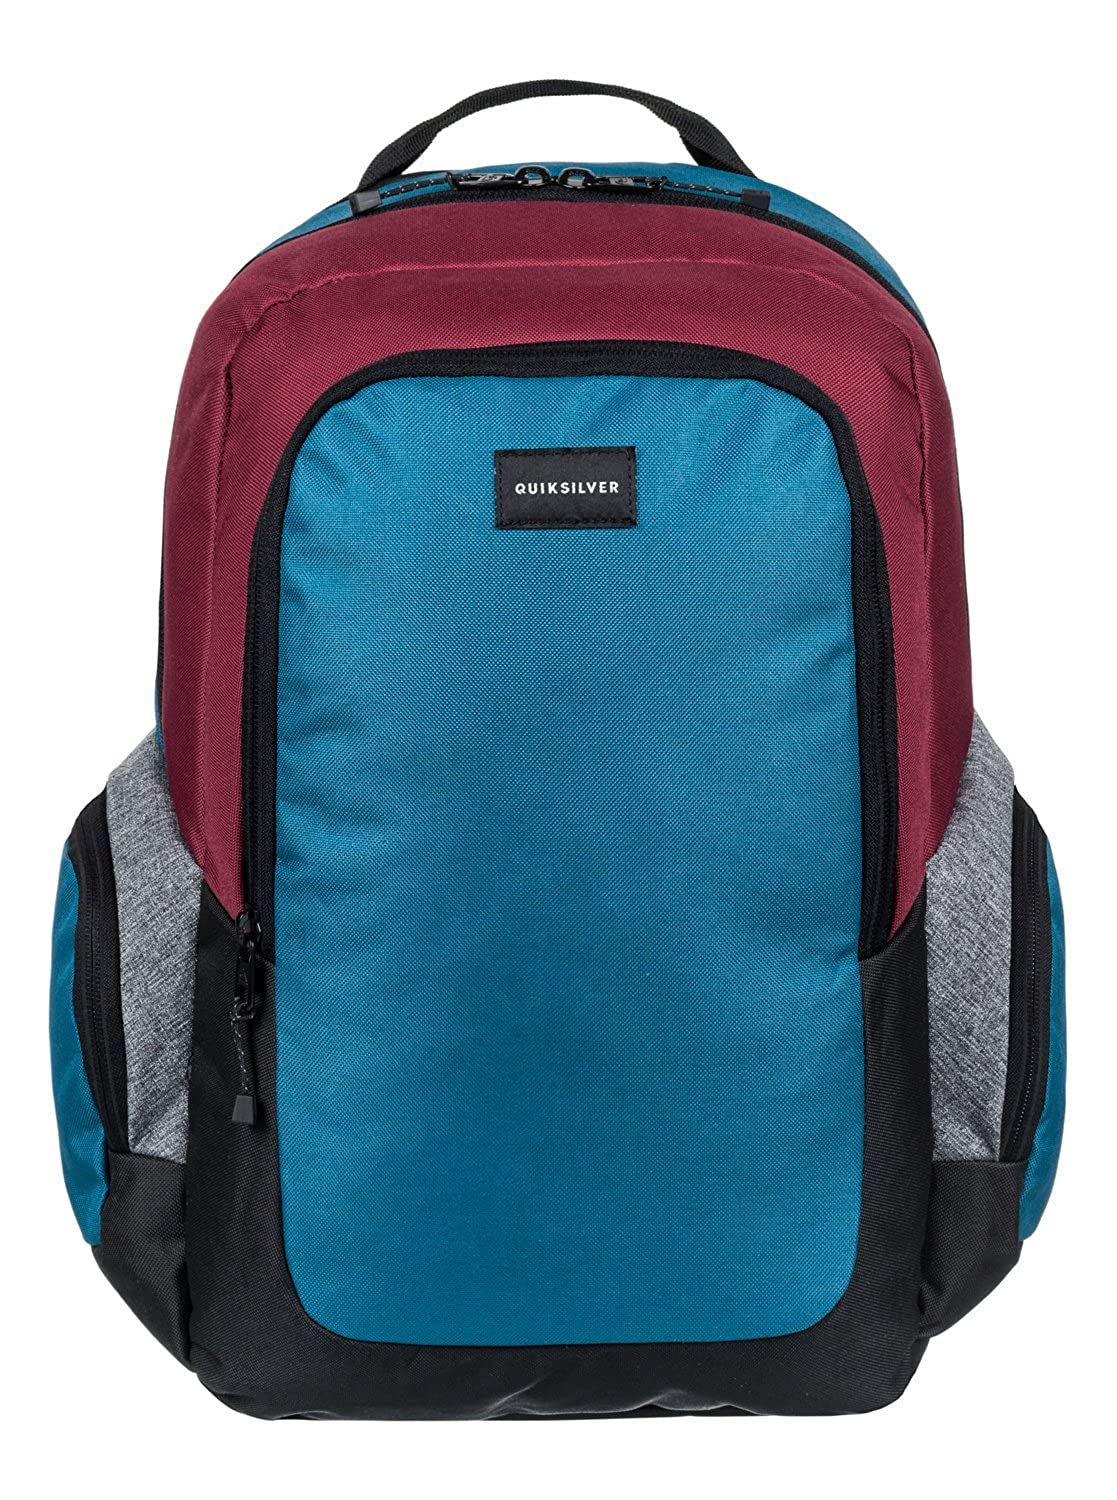 Mochila Quiksilver doble chico EQYBP03418 Schoolie Backpack bolsillo gris azul y granate | Berart - Tienda de Moda en Gausach, Vielha, Valle de Aran